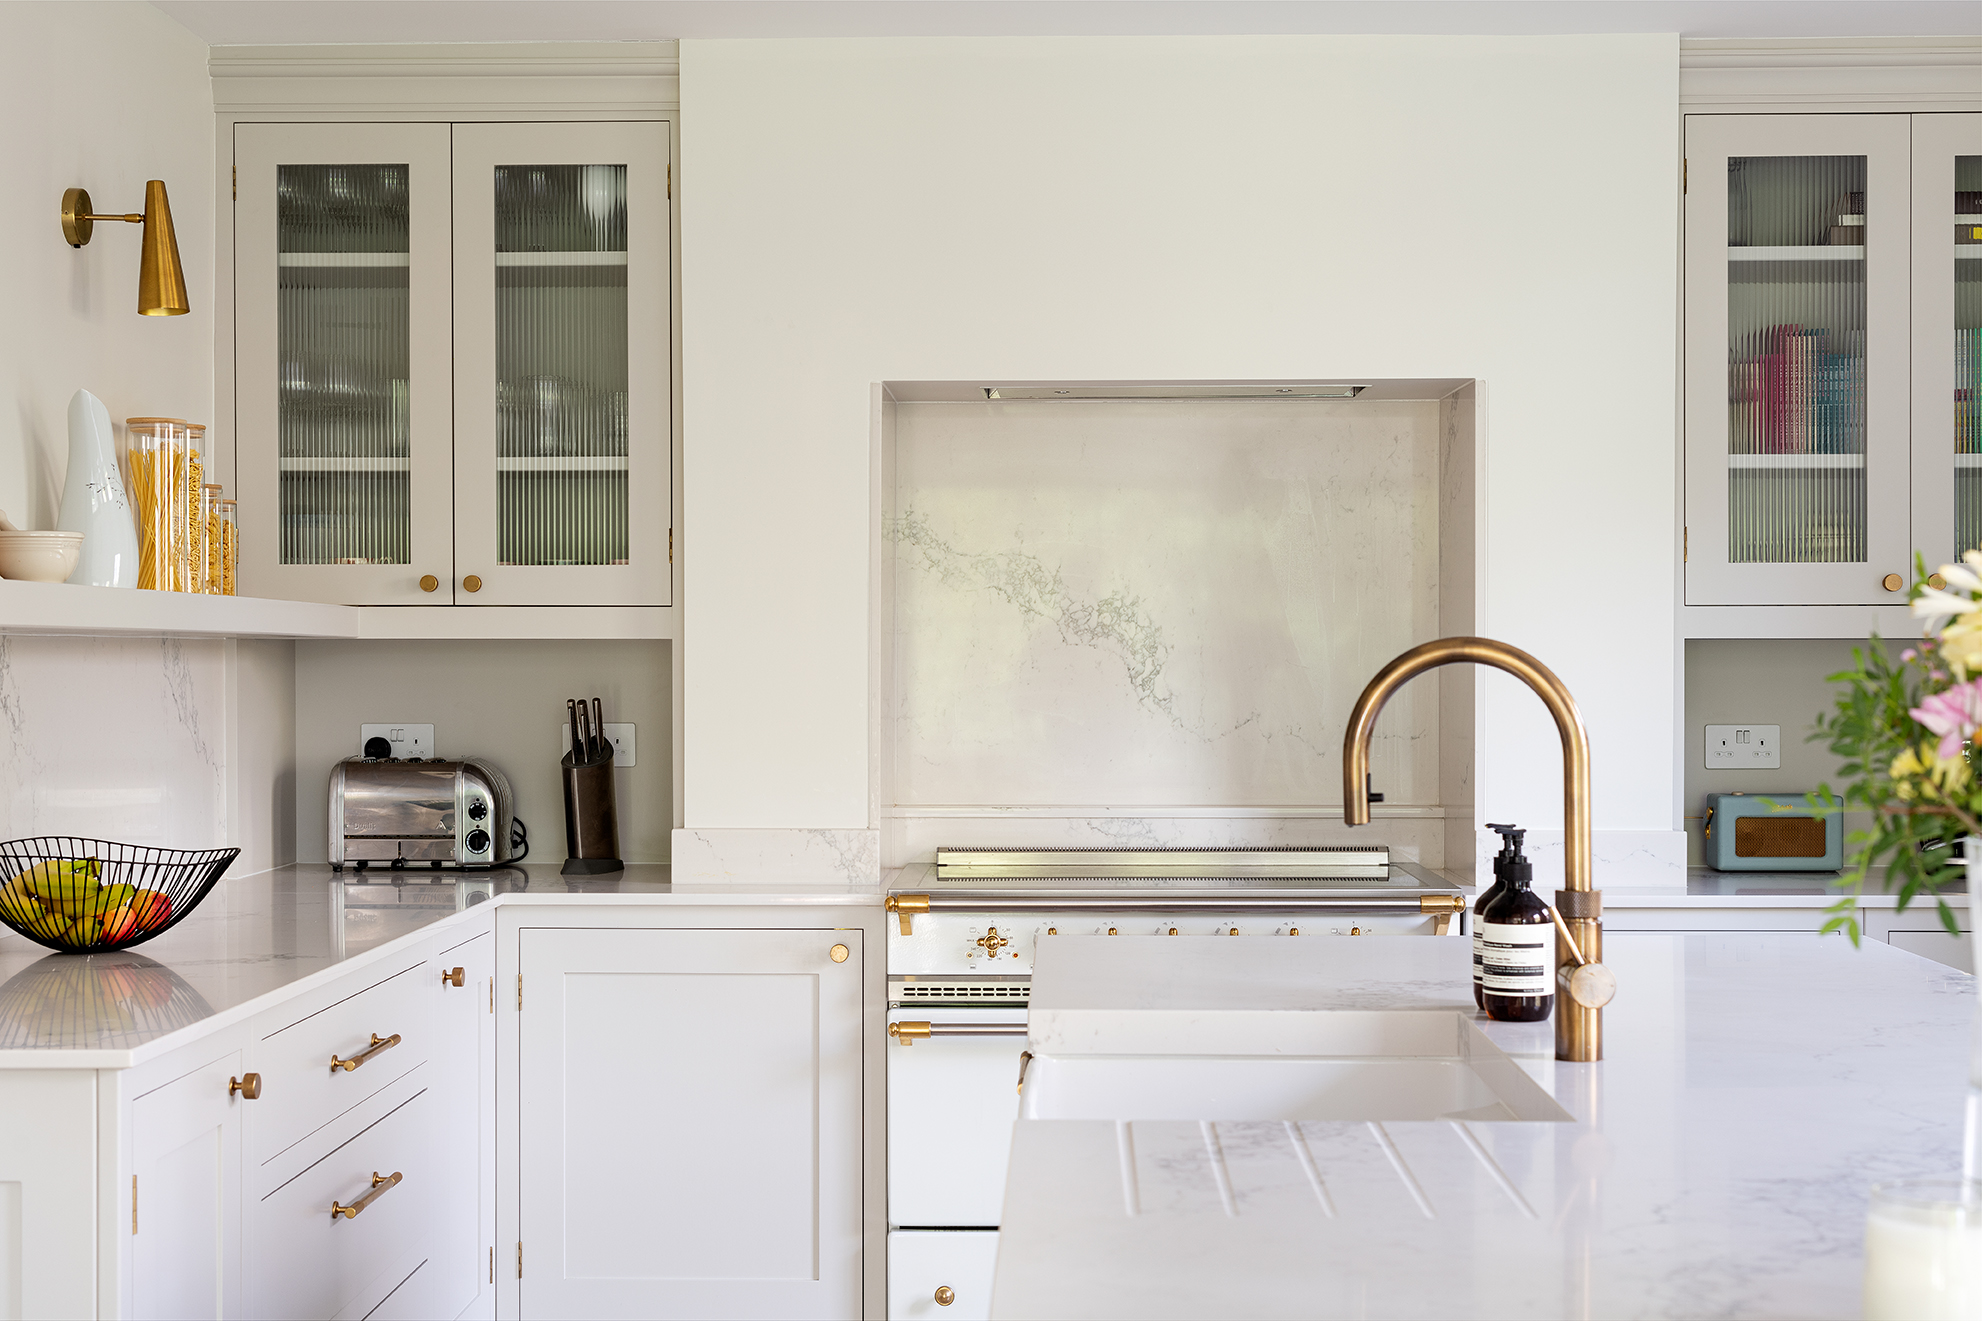 Blue Kitchen Cabinets with Sleek Brass Hardware - Transitional - Kitchen